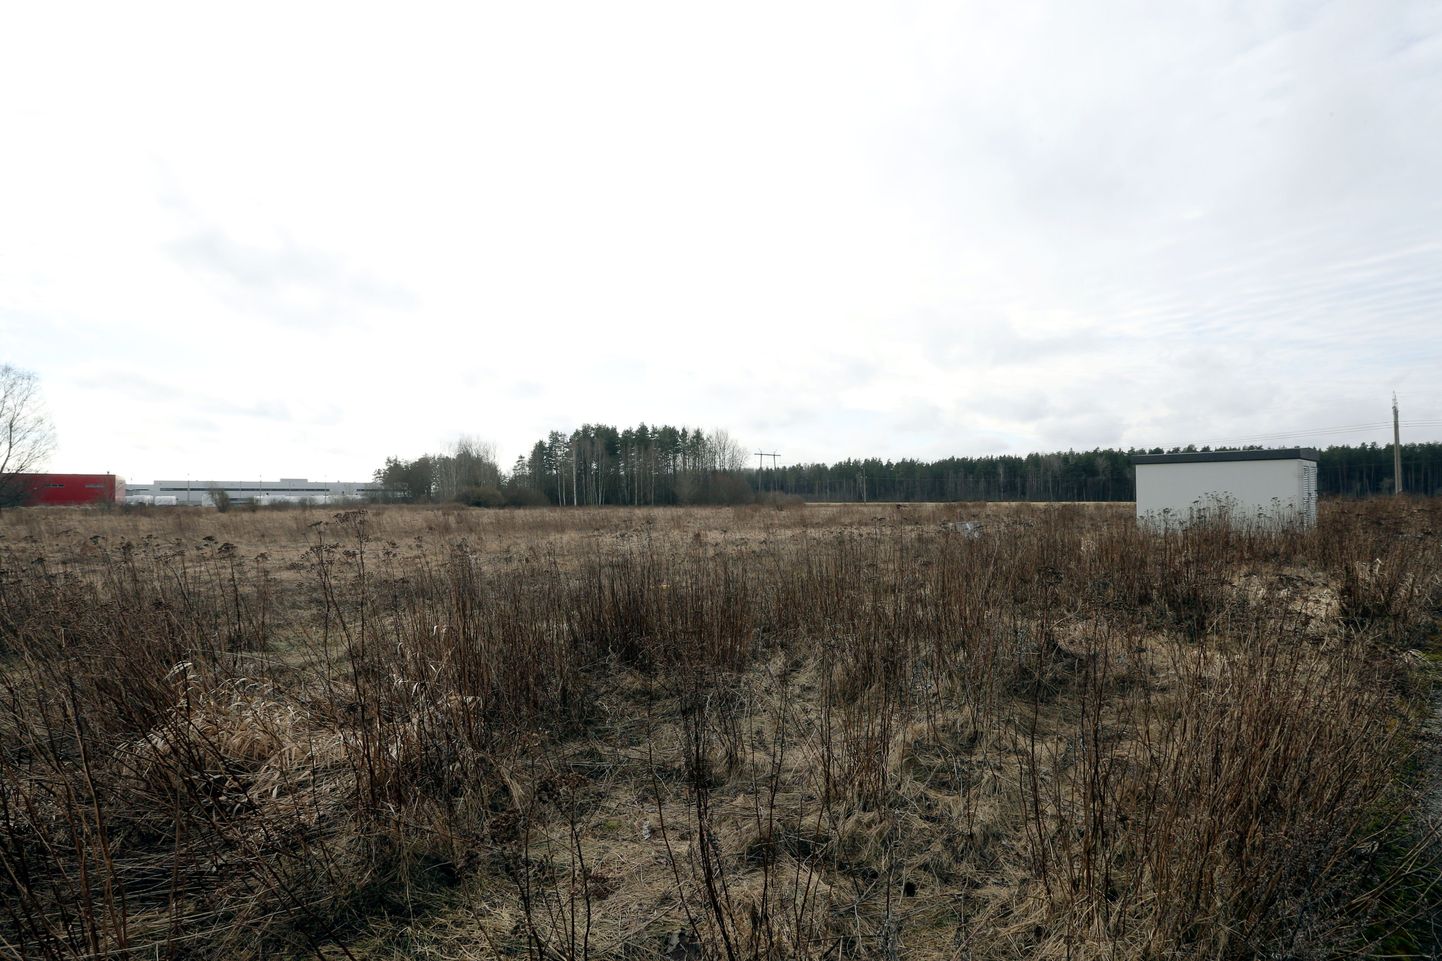 Hiljemalt kahe aasta pärast hakkab Ravila tööstuspargi neil seni kasutuseta kruntidel tööle Rand ja Tuulberg Grupi majaelementide tehas. Ettevõte tasub Tartu linnale sellest tööstuspargist soetatava veidi üle 2,2 hektari maa eest 50 aasta jooksul.